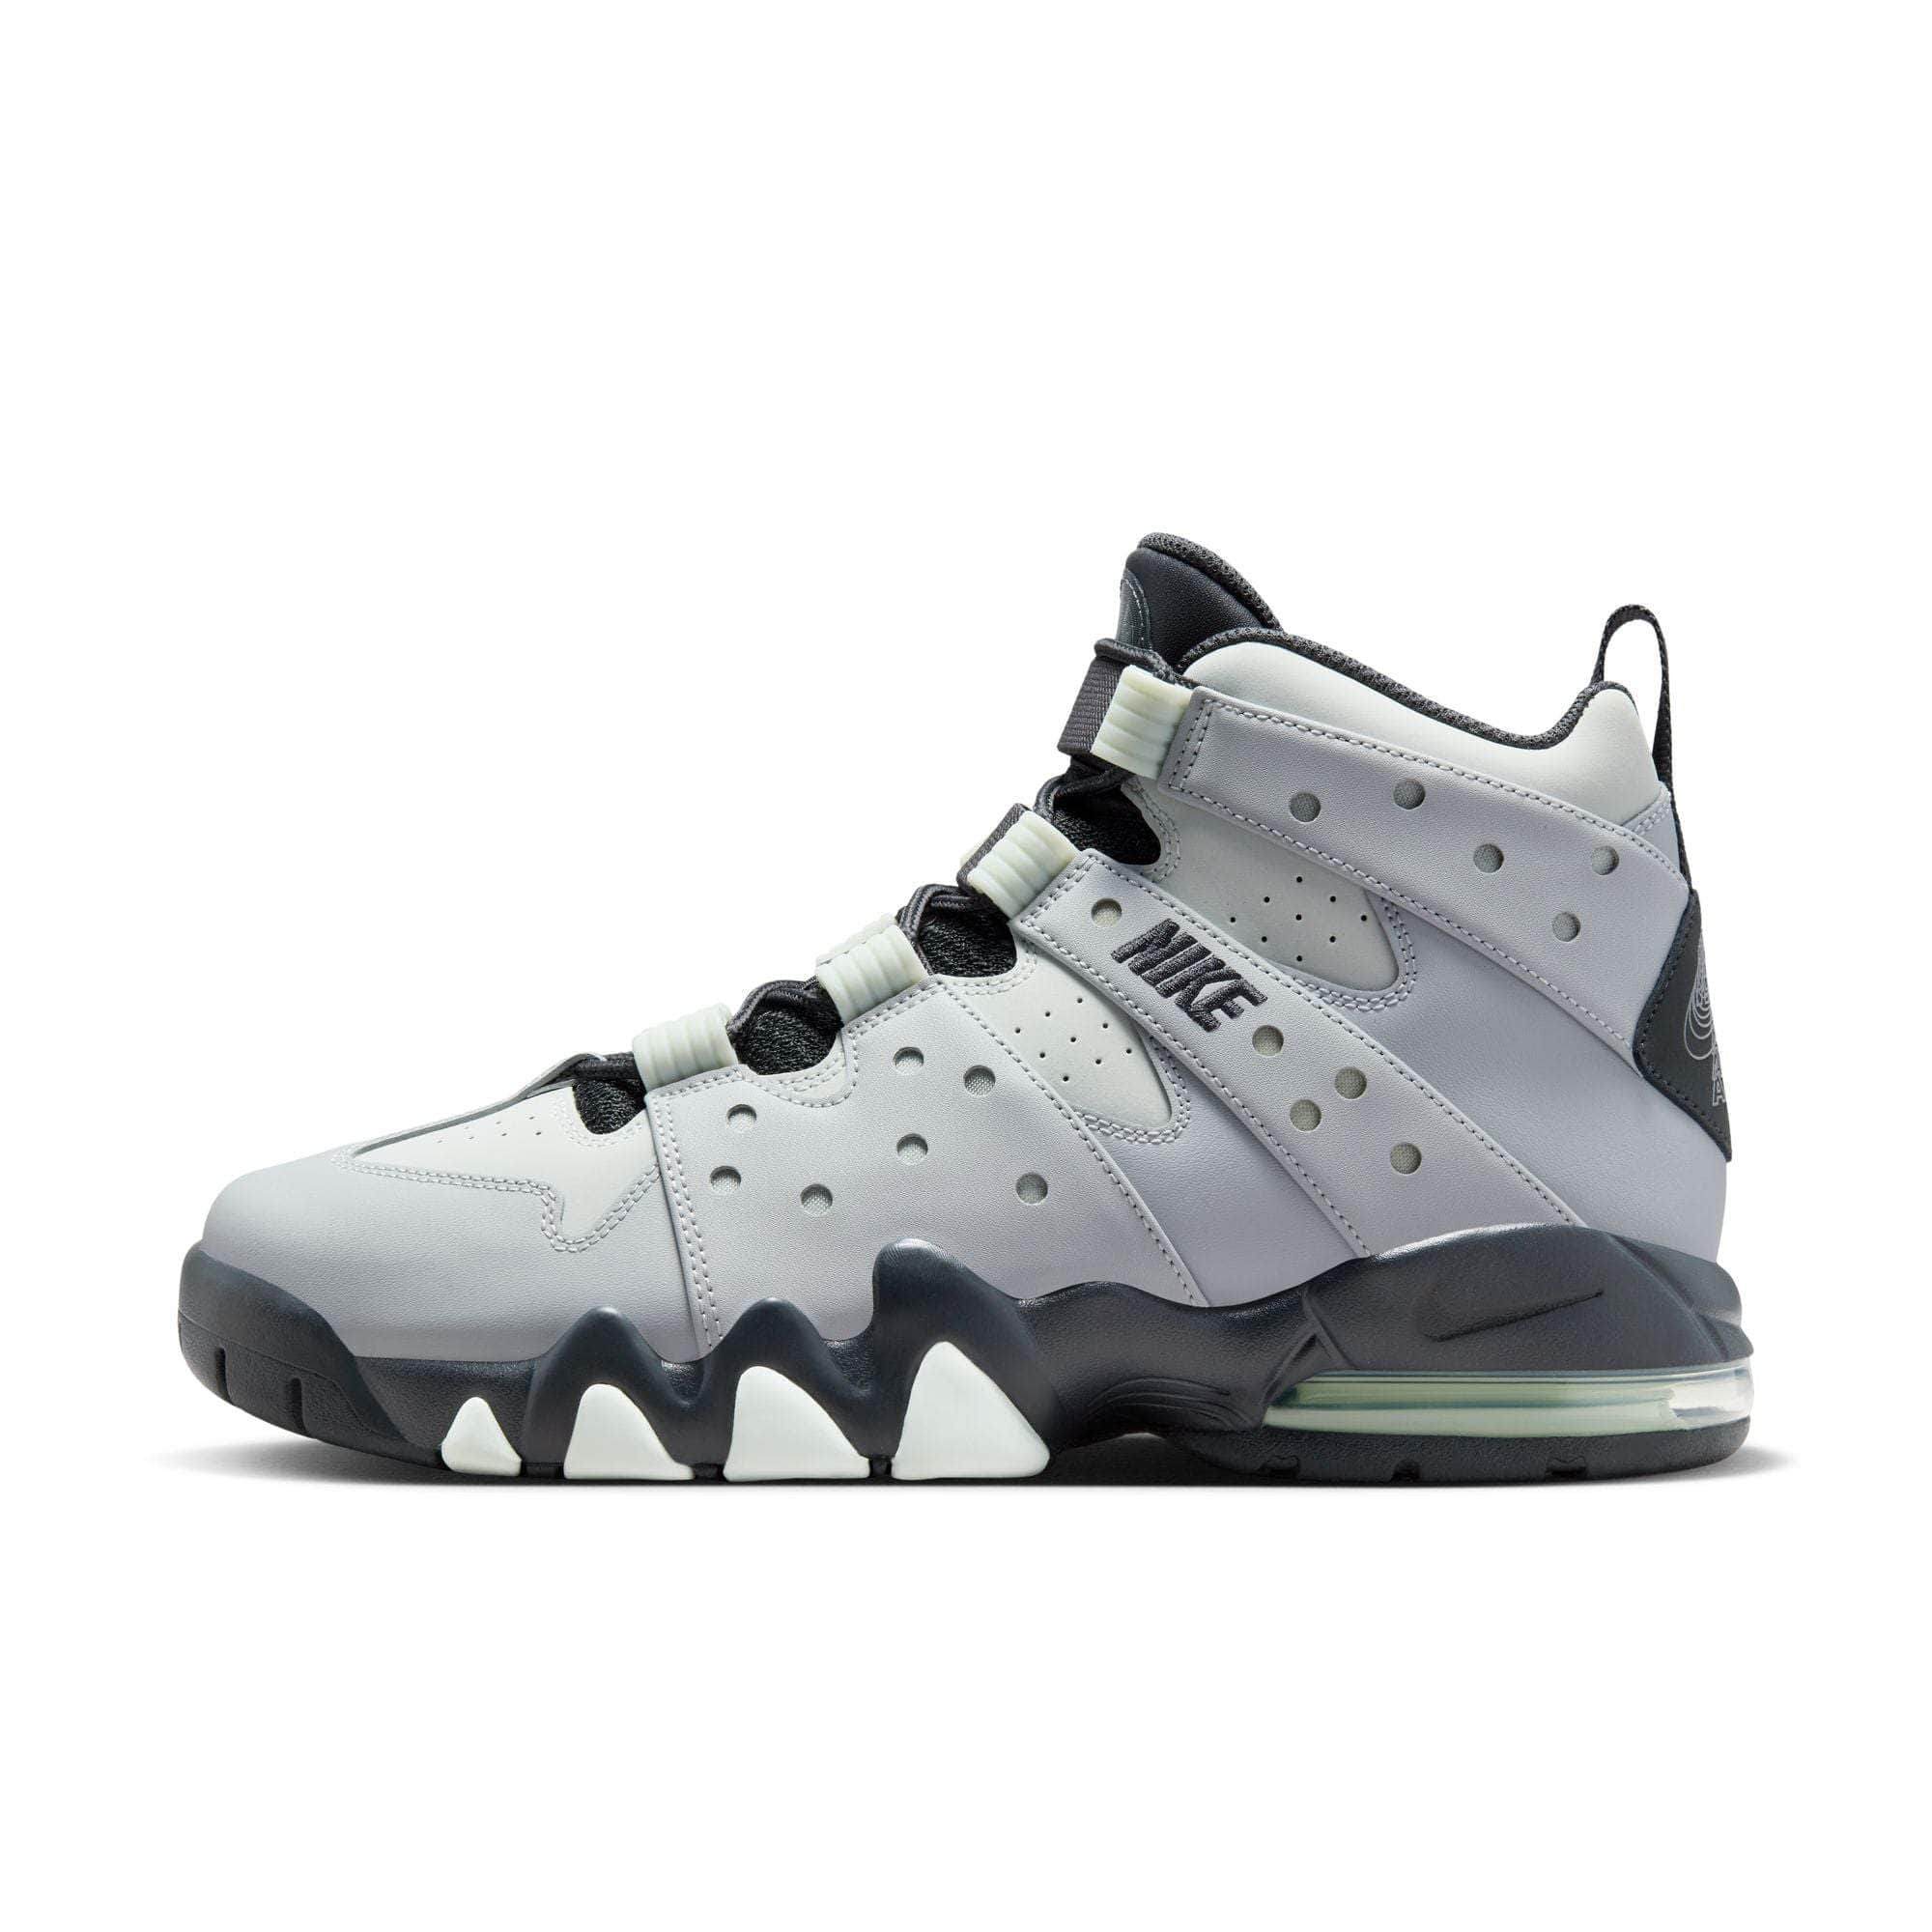 Nike Footwear 8 / Grey Nike Air Max 2 CB '94 "Dark Smoke Grey" - Men's FJ4180-001